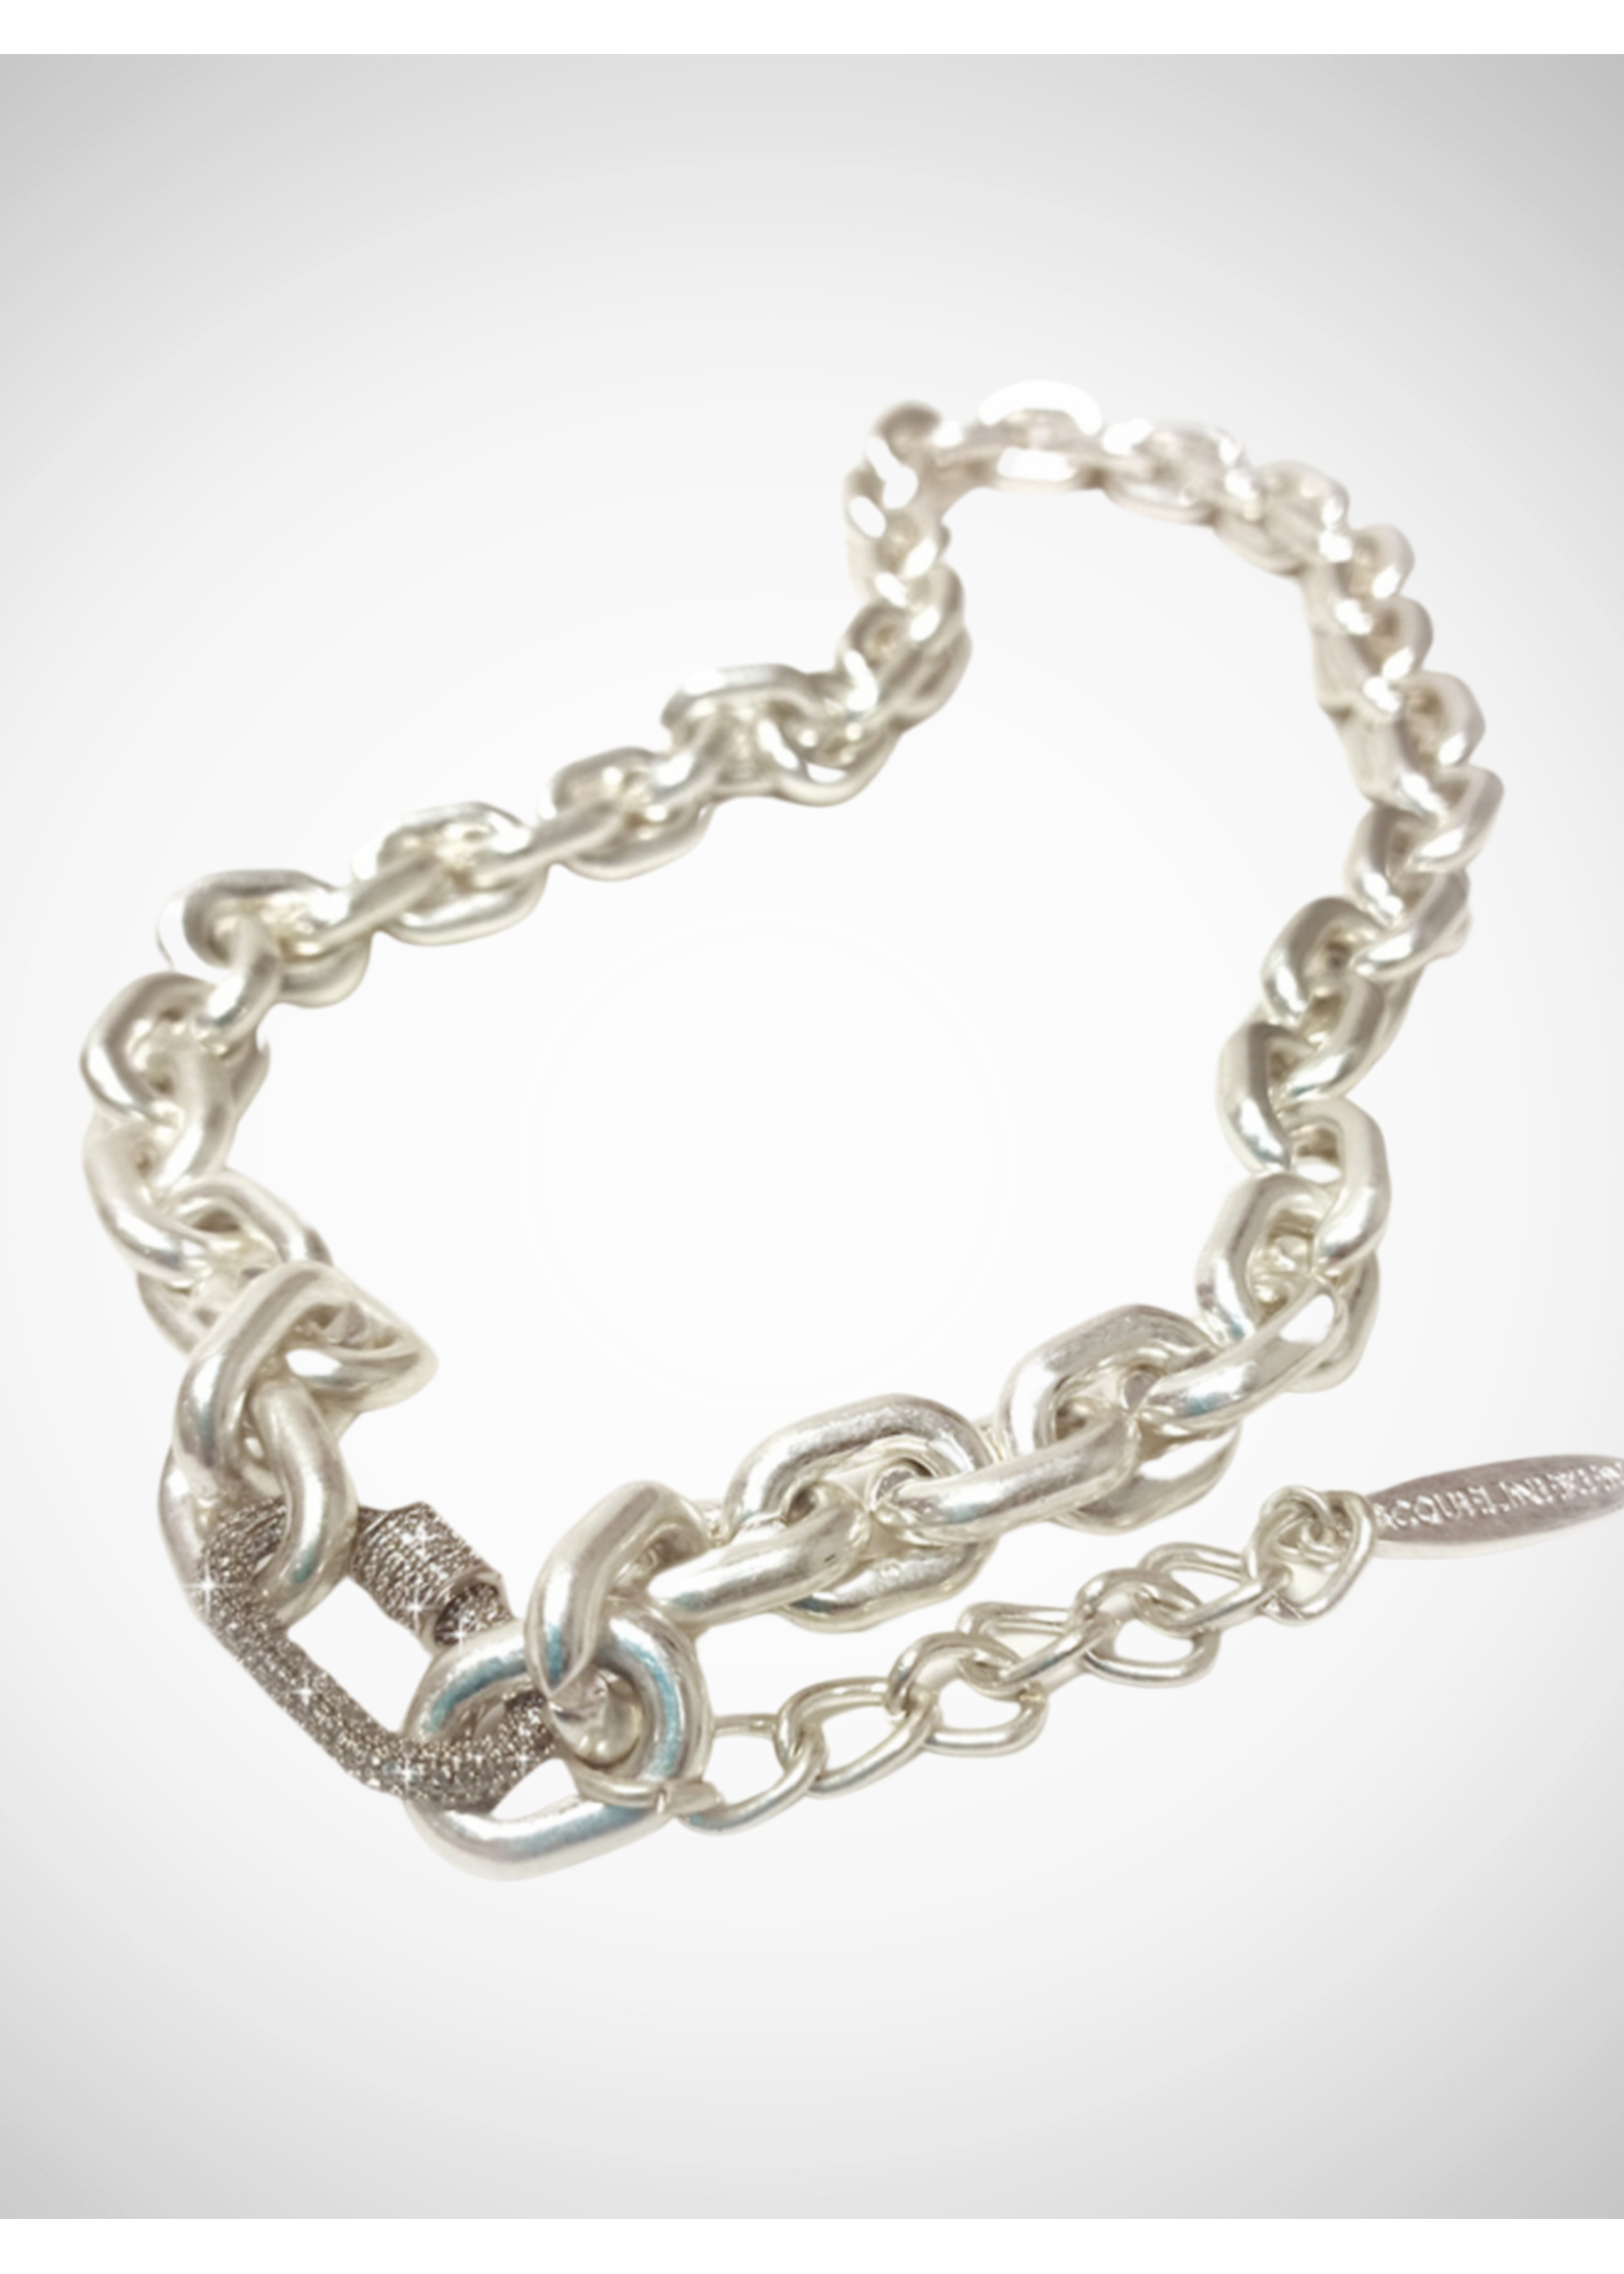 Jacqueline Kent Necklace "Diamond" Link Chain Silver | JK